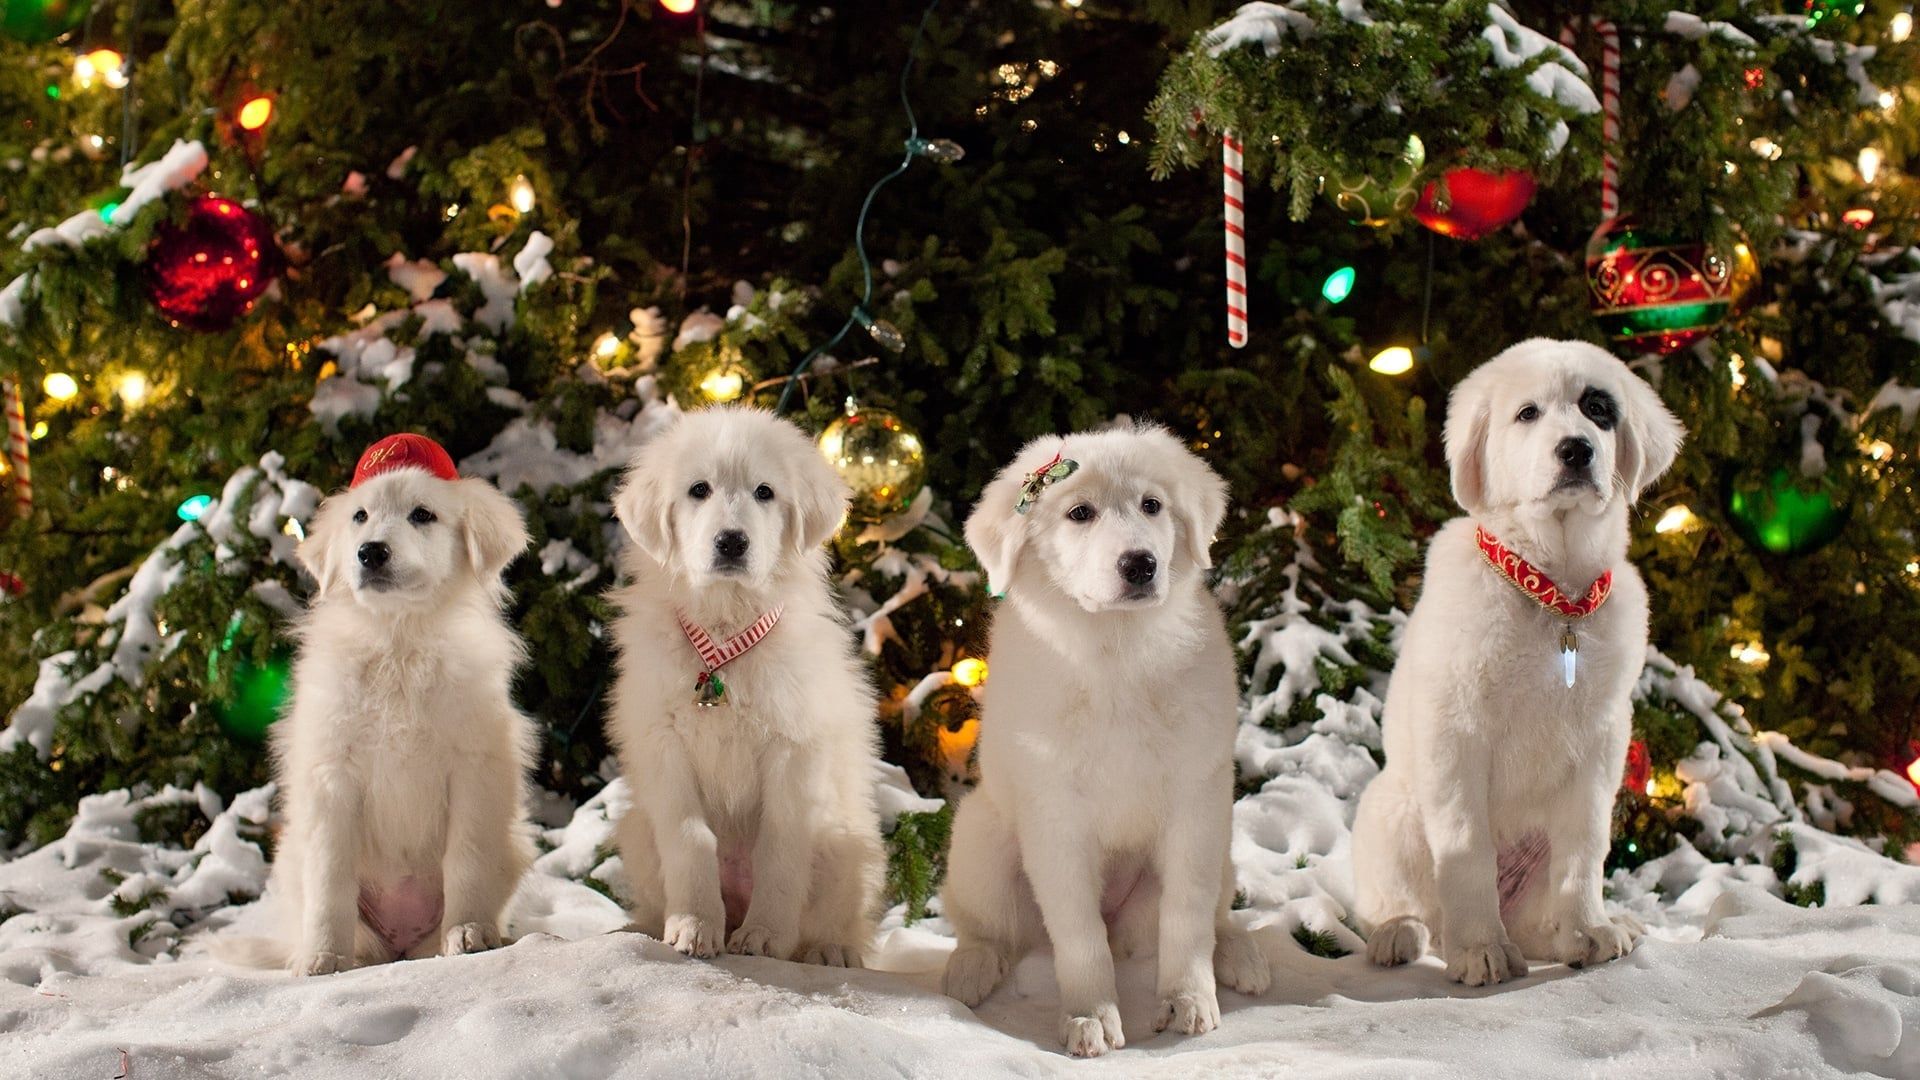 Santa Paws 2: The Santa Pups background